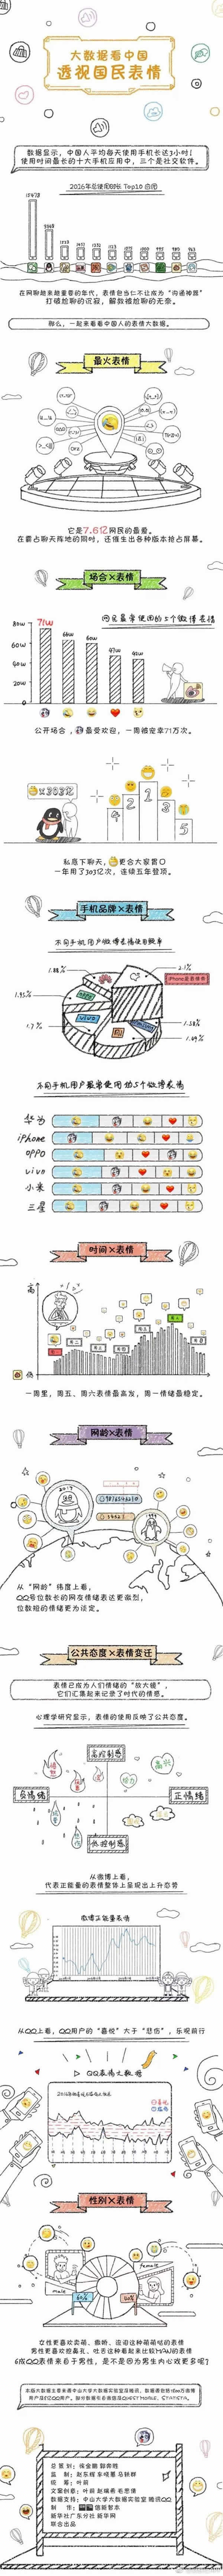 2017中国最火网络表情公布，哪款表情你最爱 移动互联网